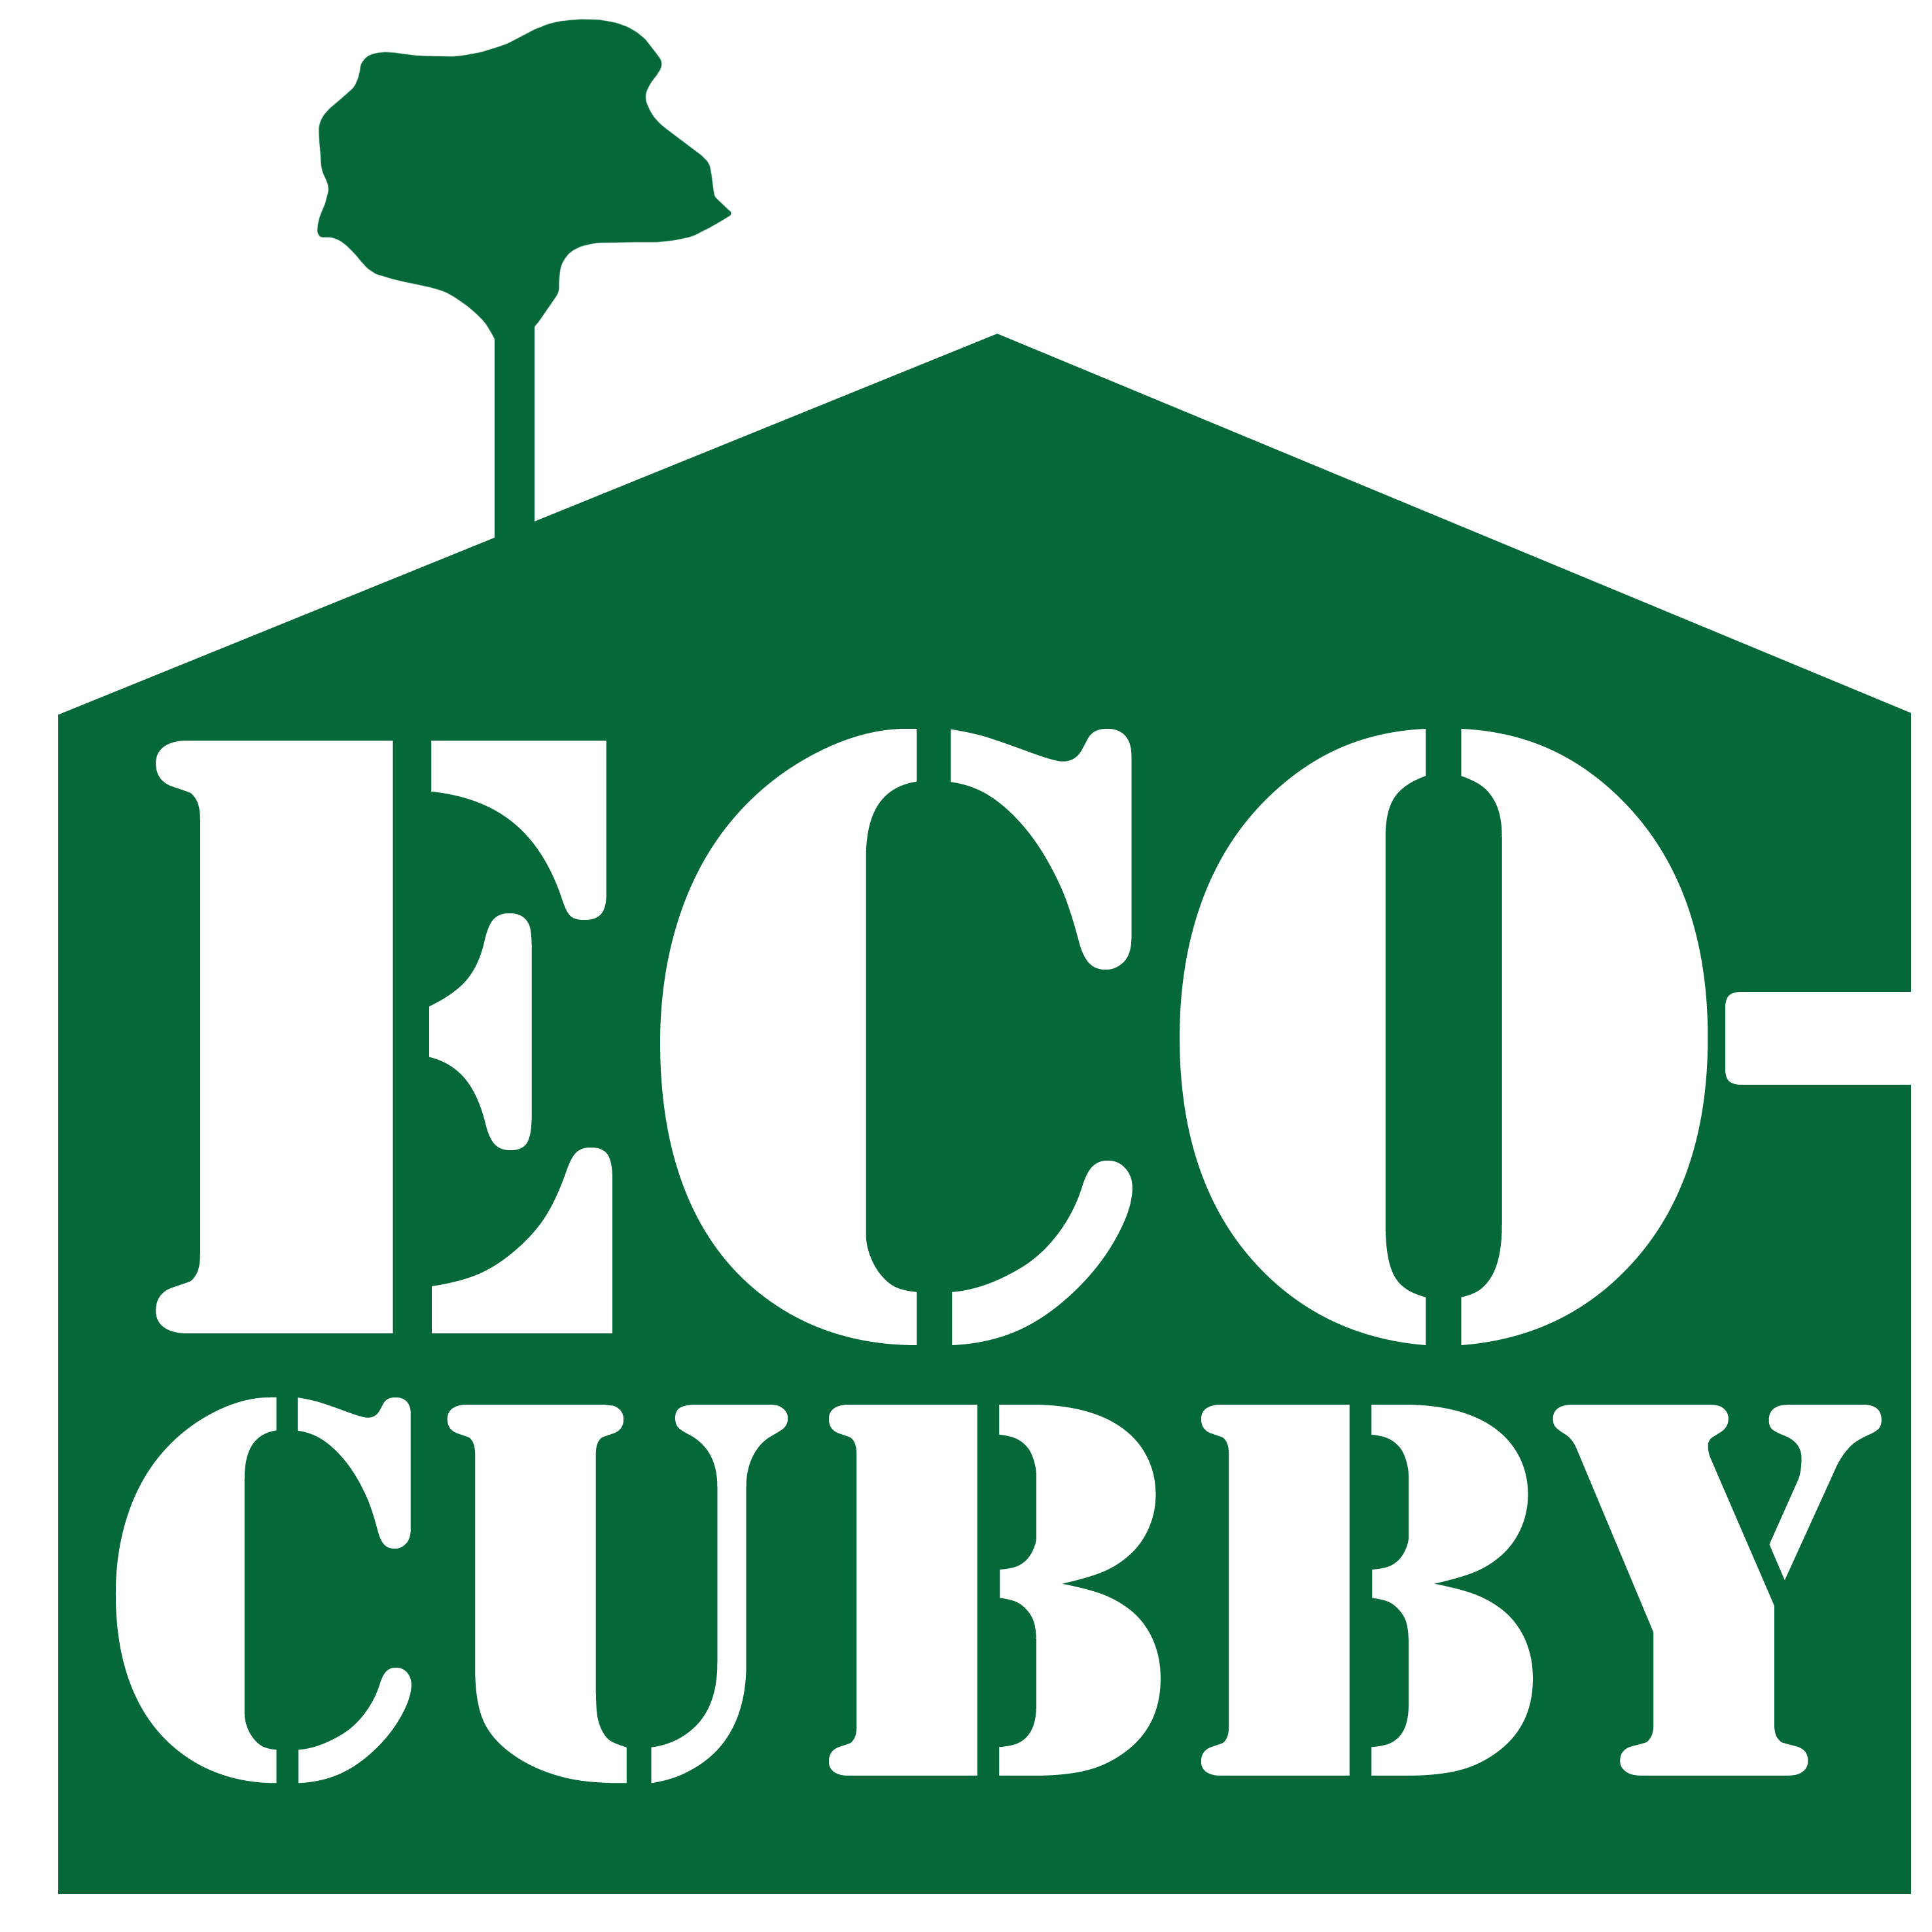 Eco-Cubby logo